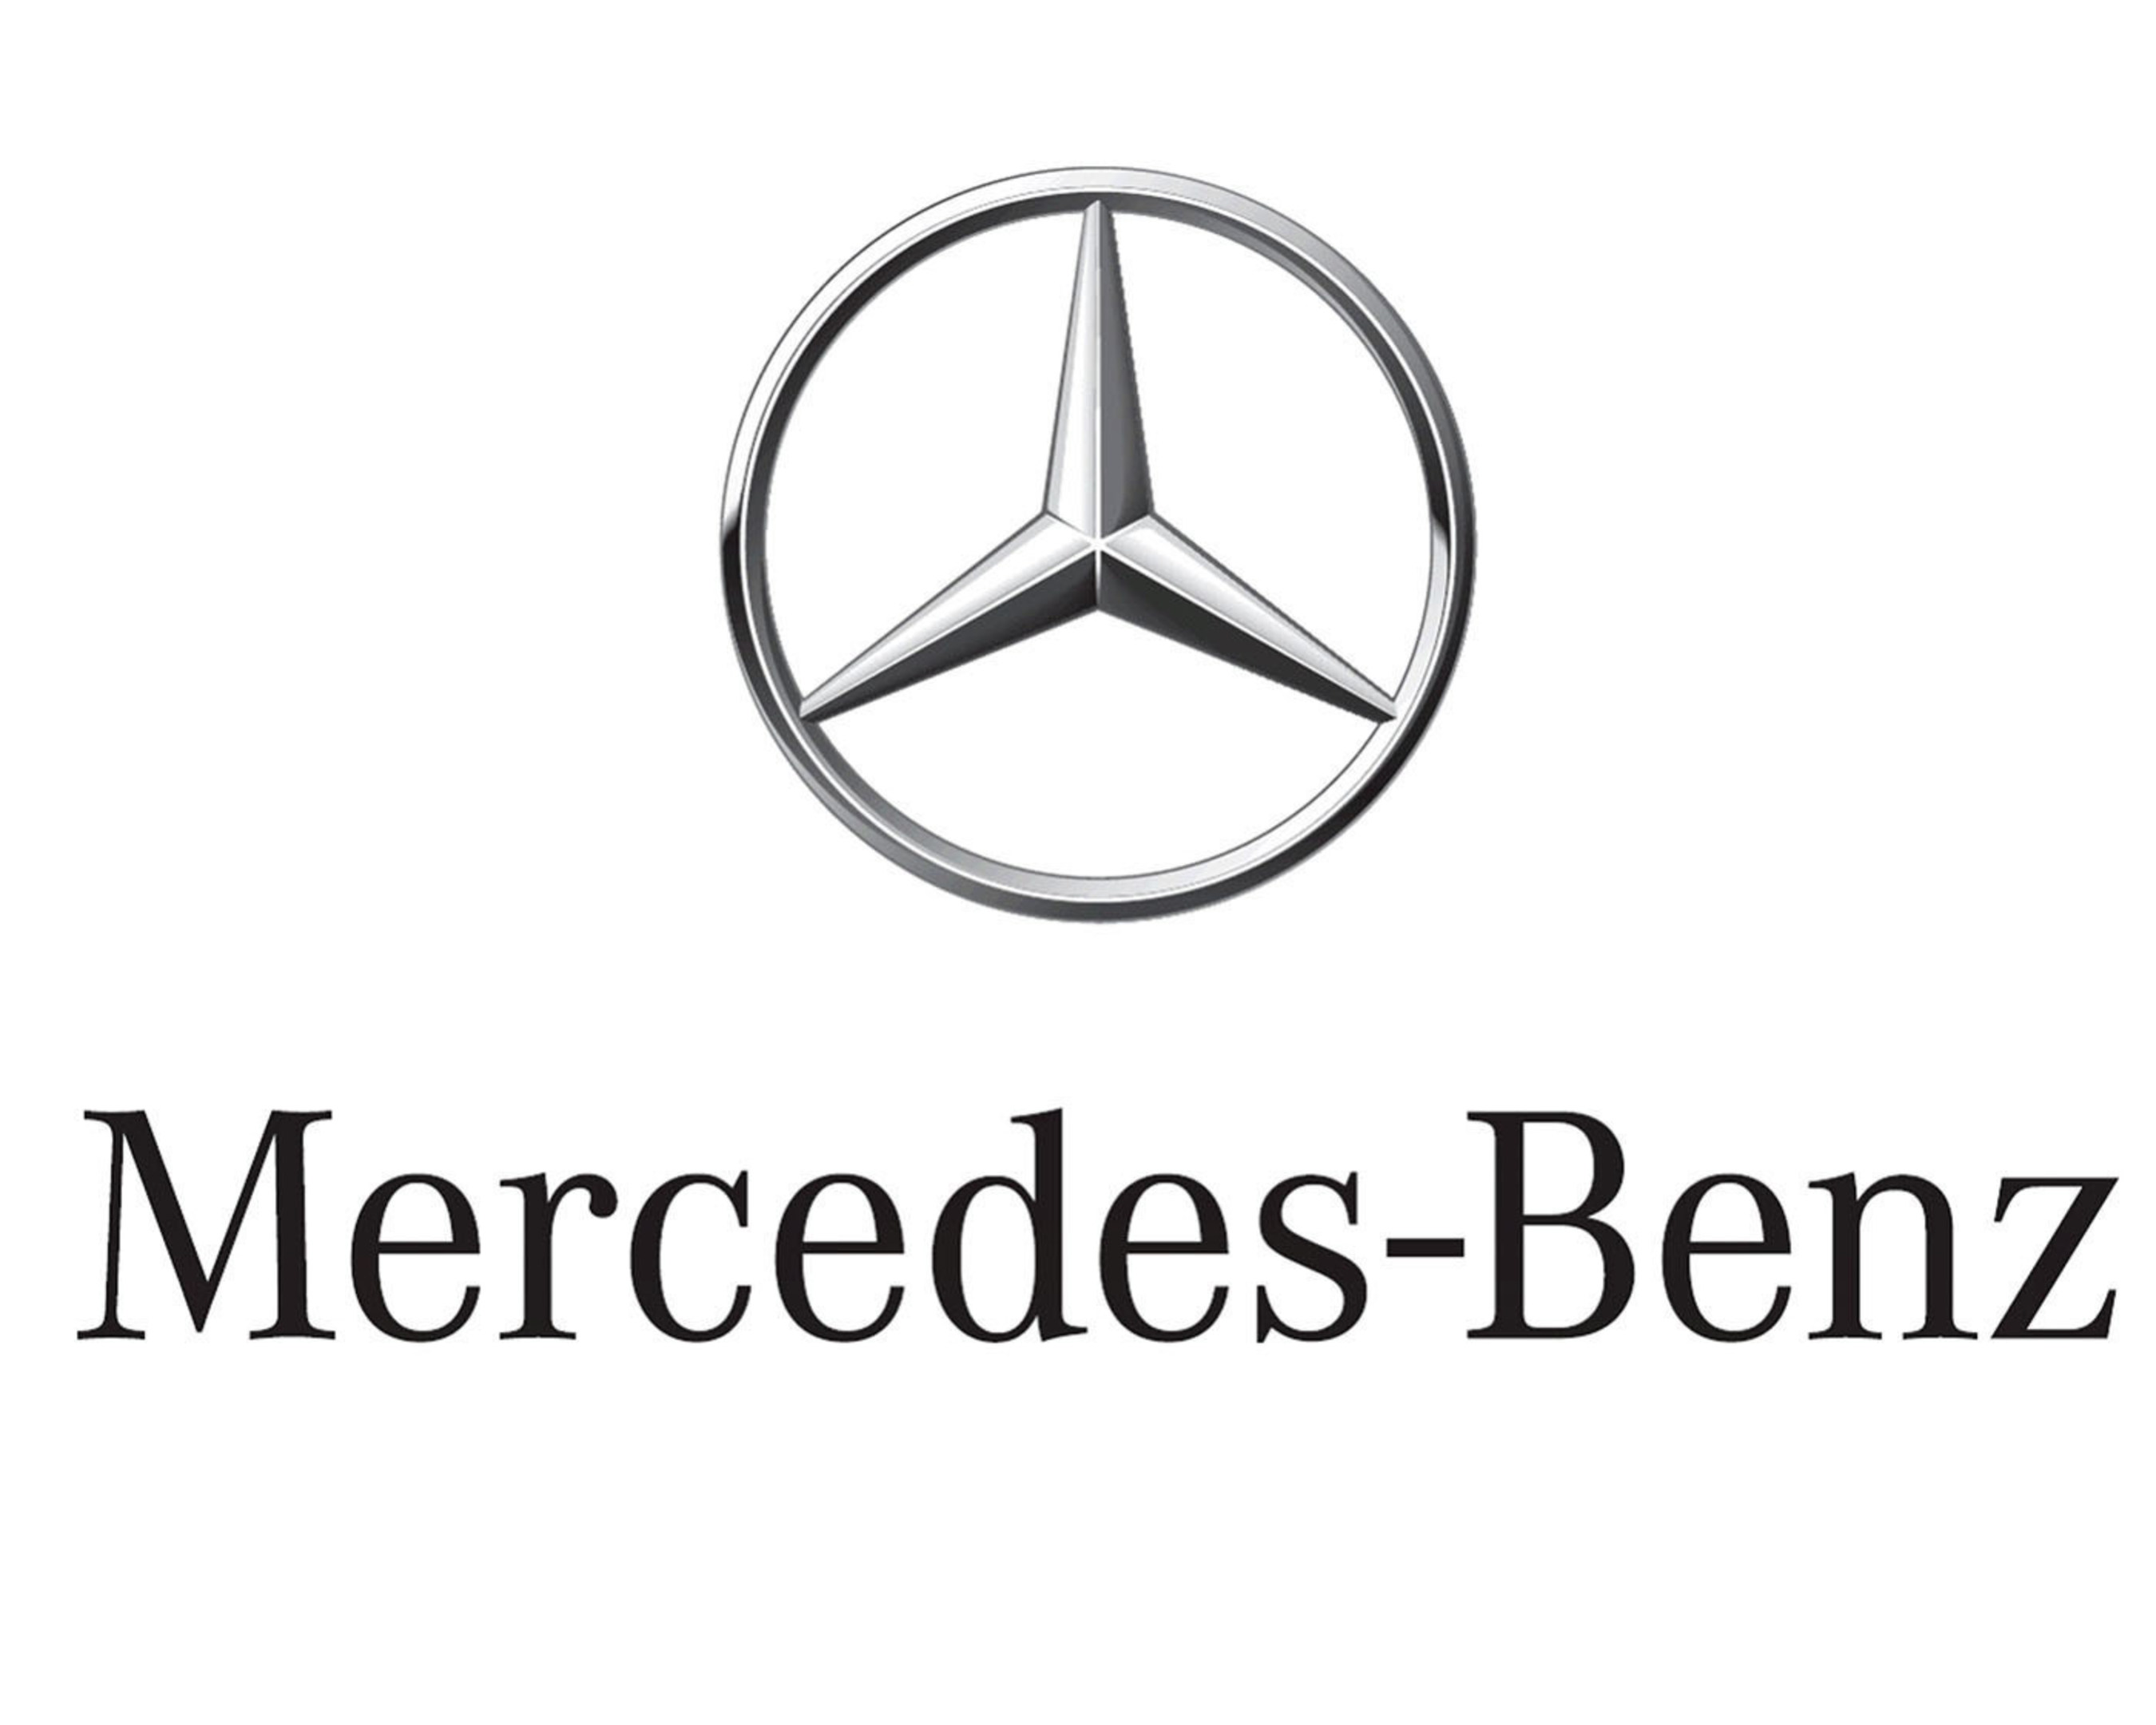 New 2011 3D Mercedes-Benz USA logo. (PRNewsFoto/Mercedes-Benz USA)